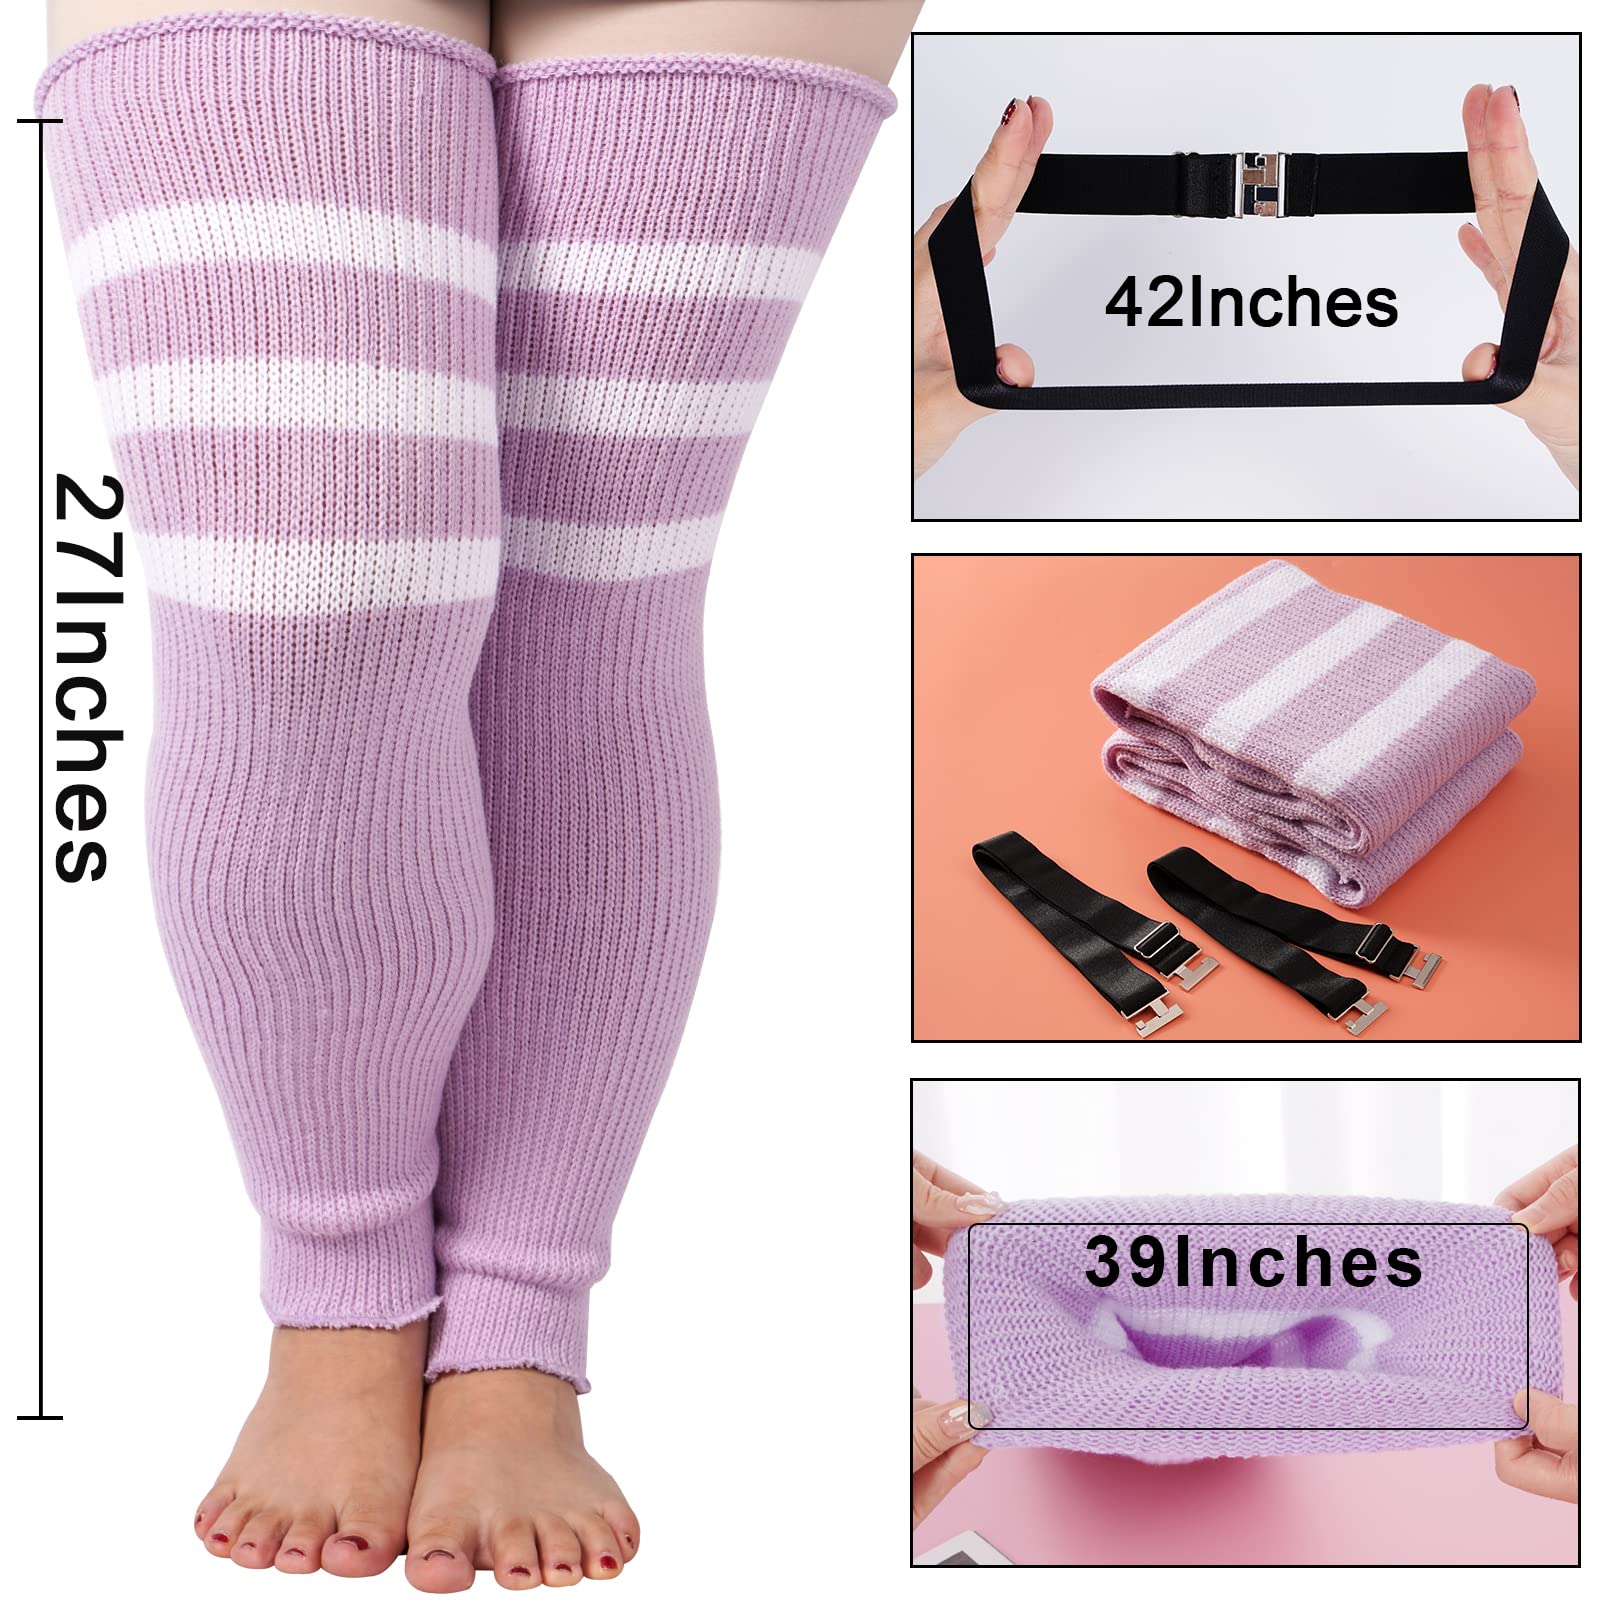 Plus Size Leg Warmers for Women-Light Purple & White - Moon Wood